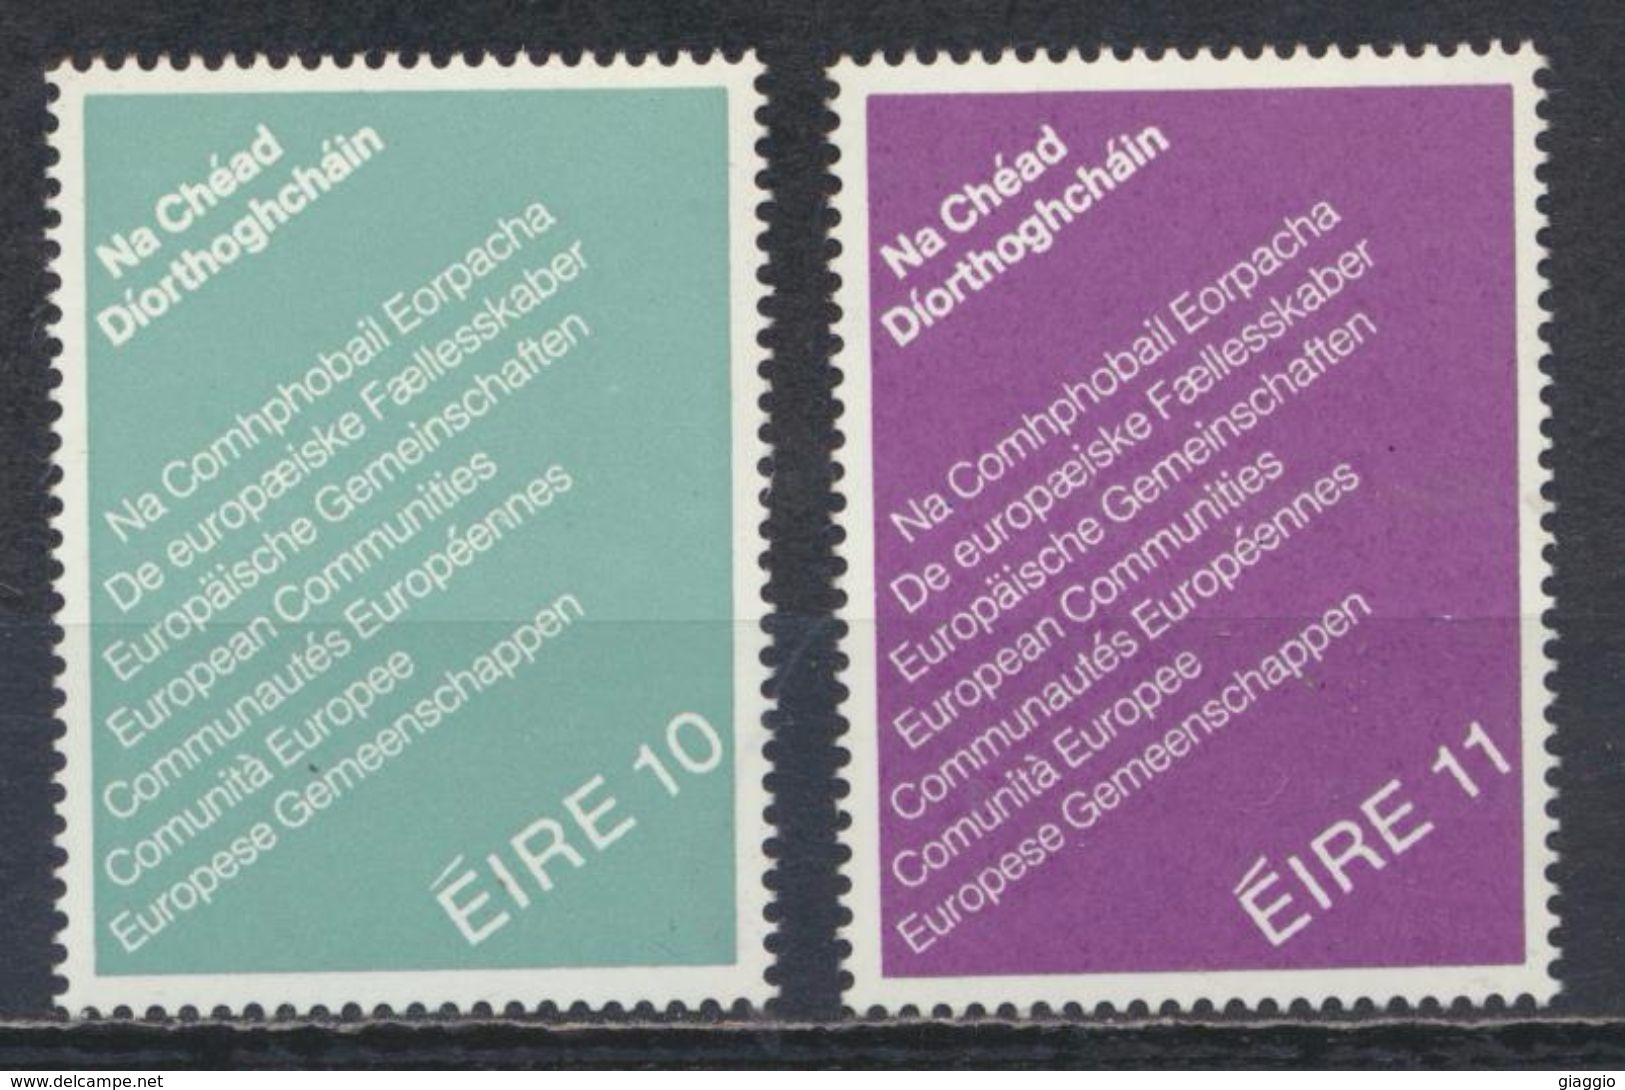 °°° IRLANDA EIRE - Y&T N°396/97 - 1979 MNH °°° - Unused Stamps